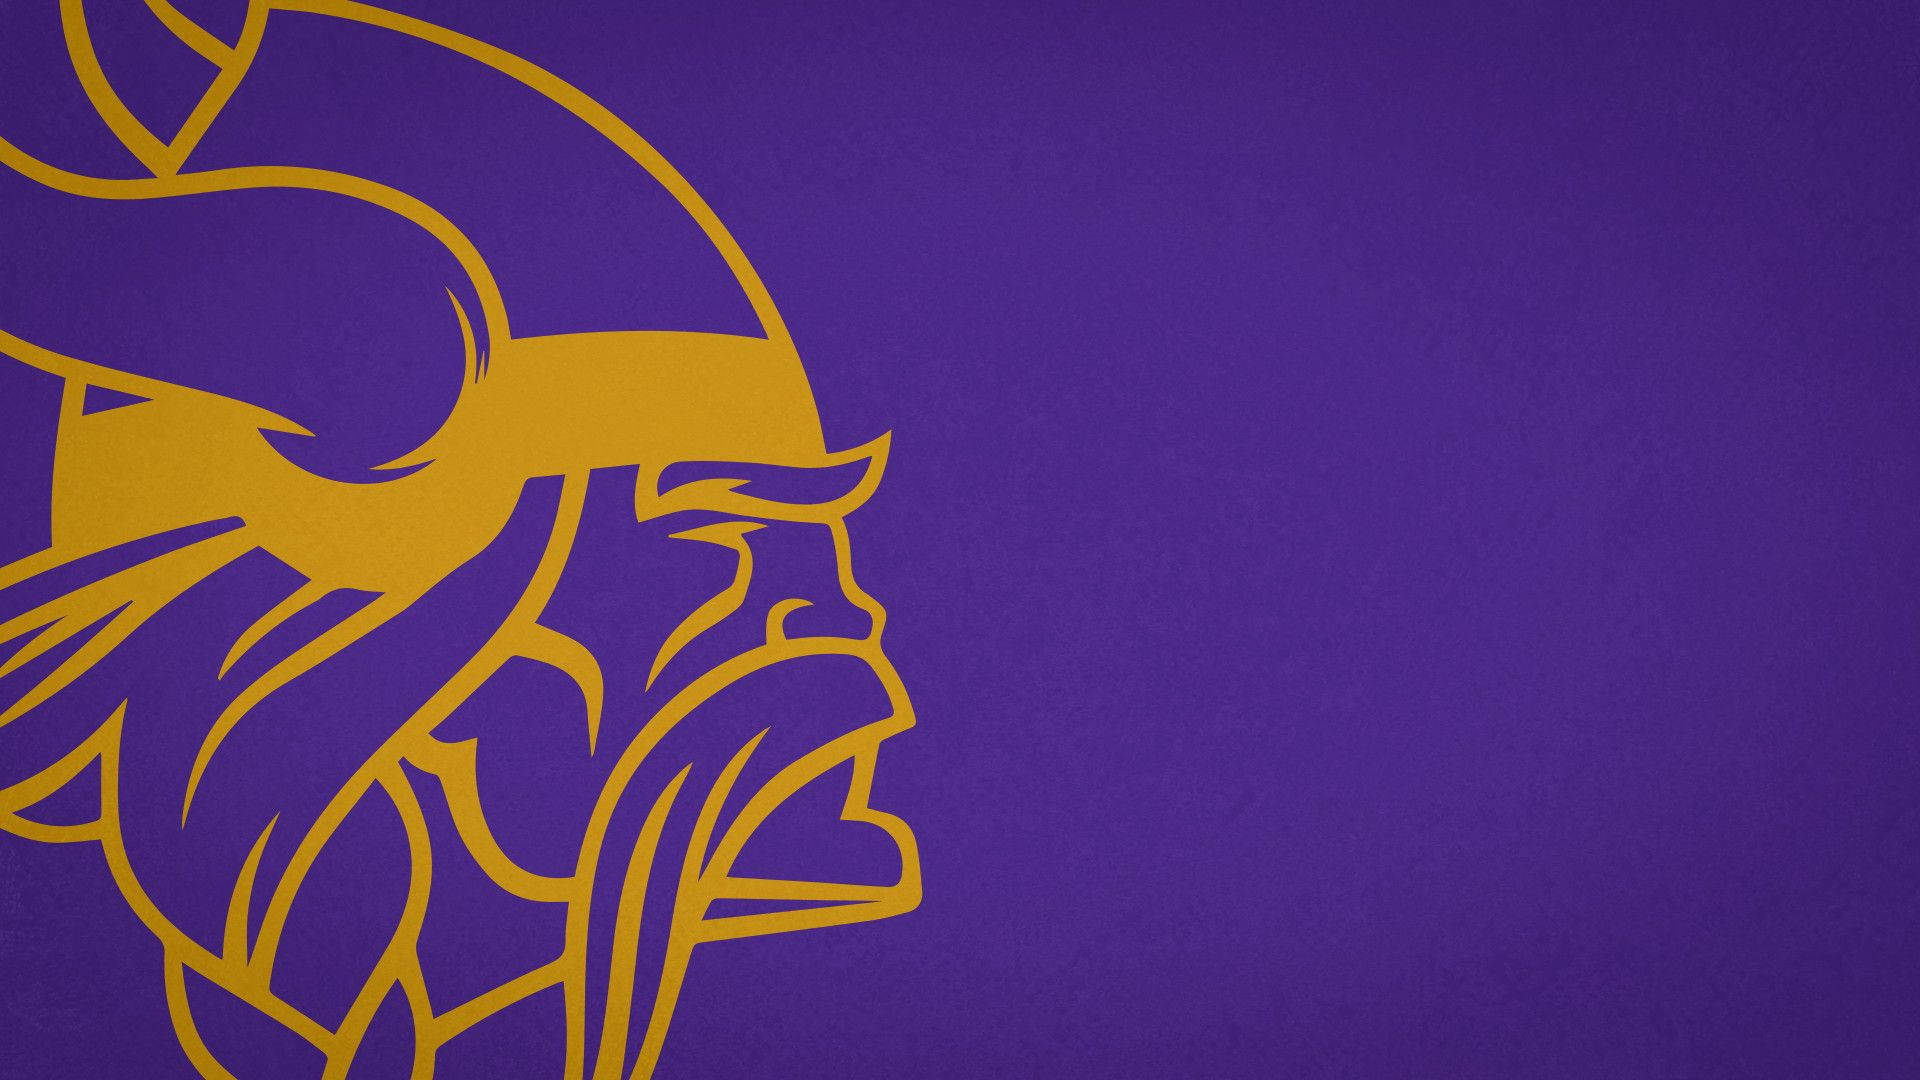 Minimalist Minnesota Vikings Icon Background